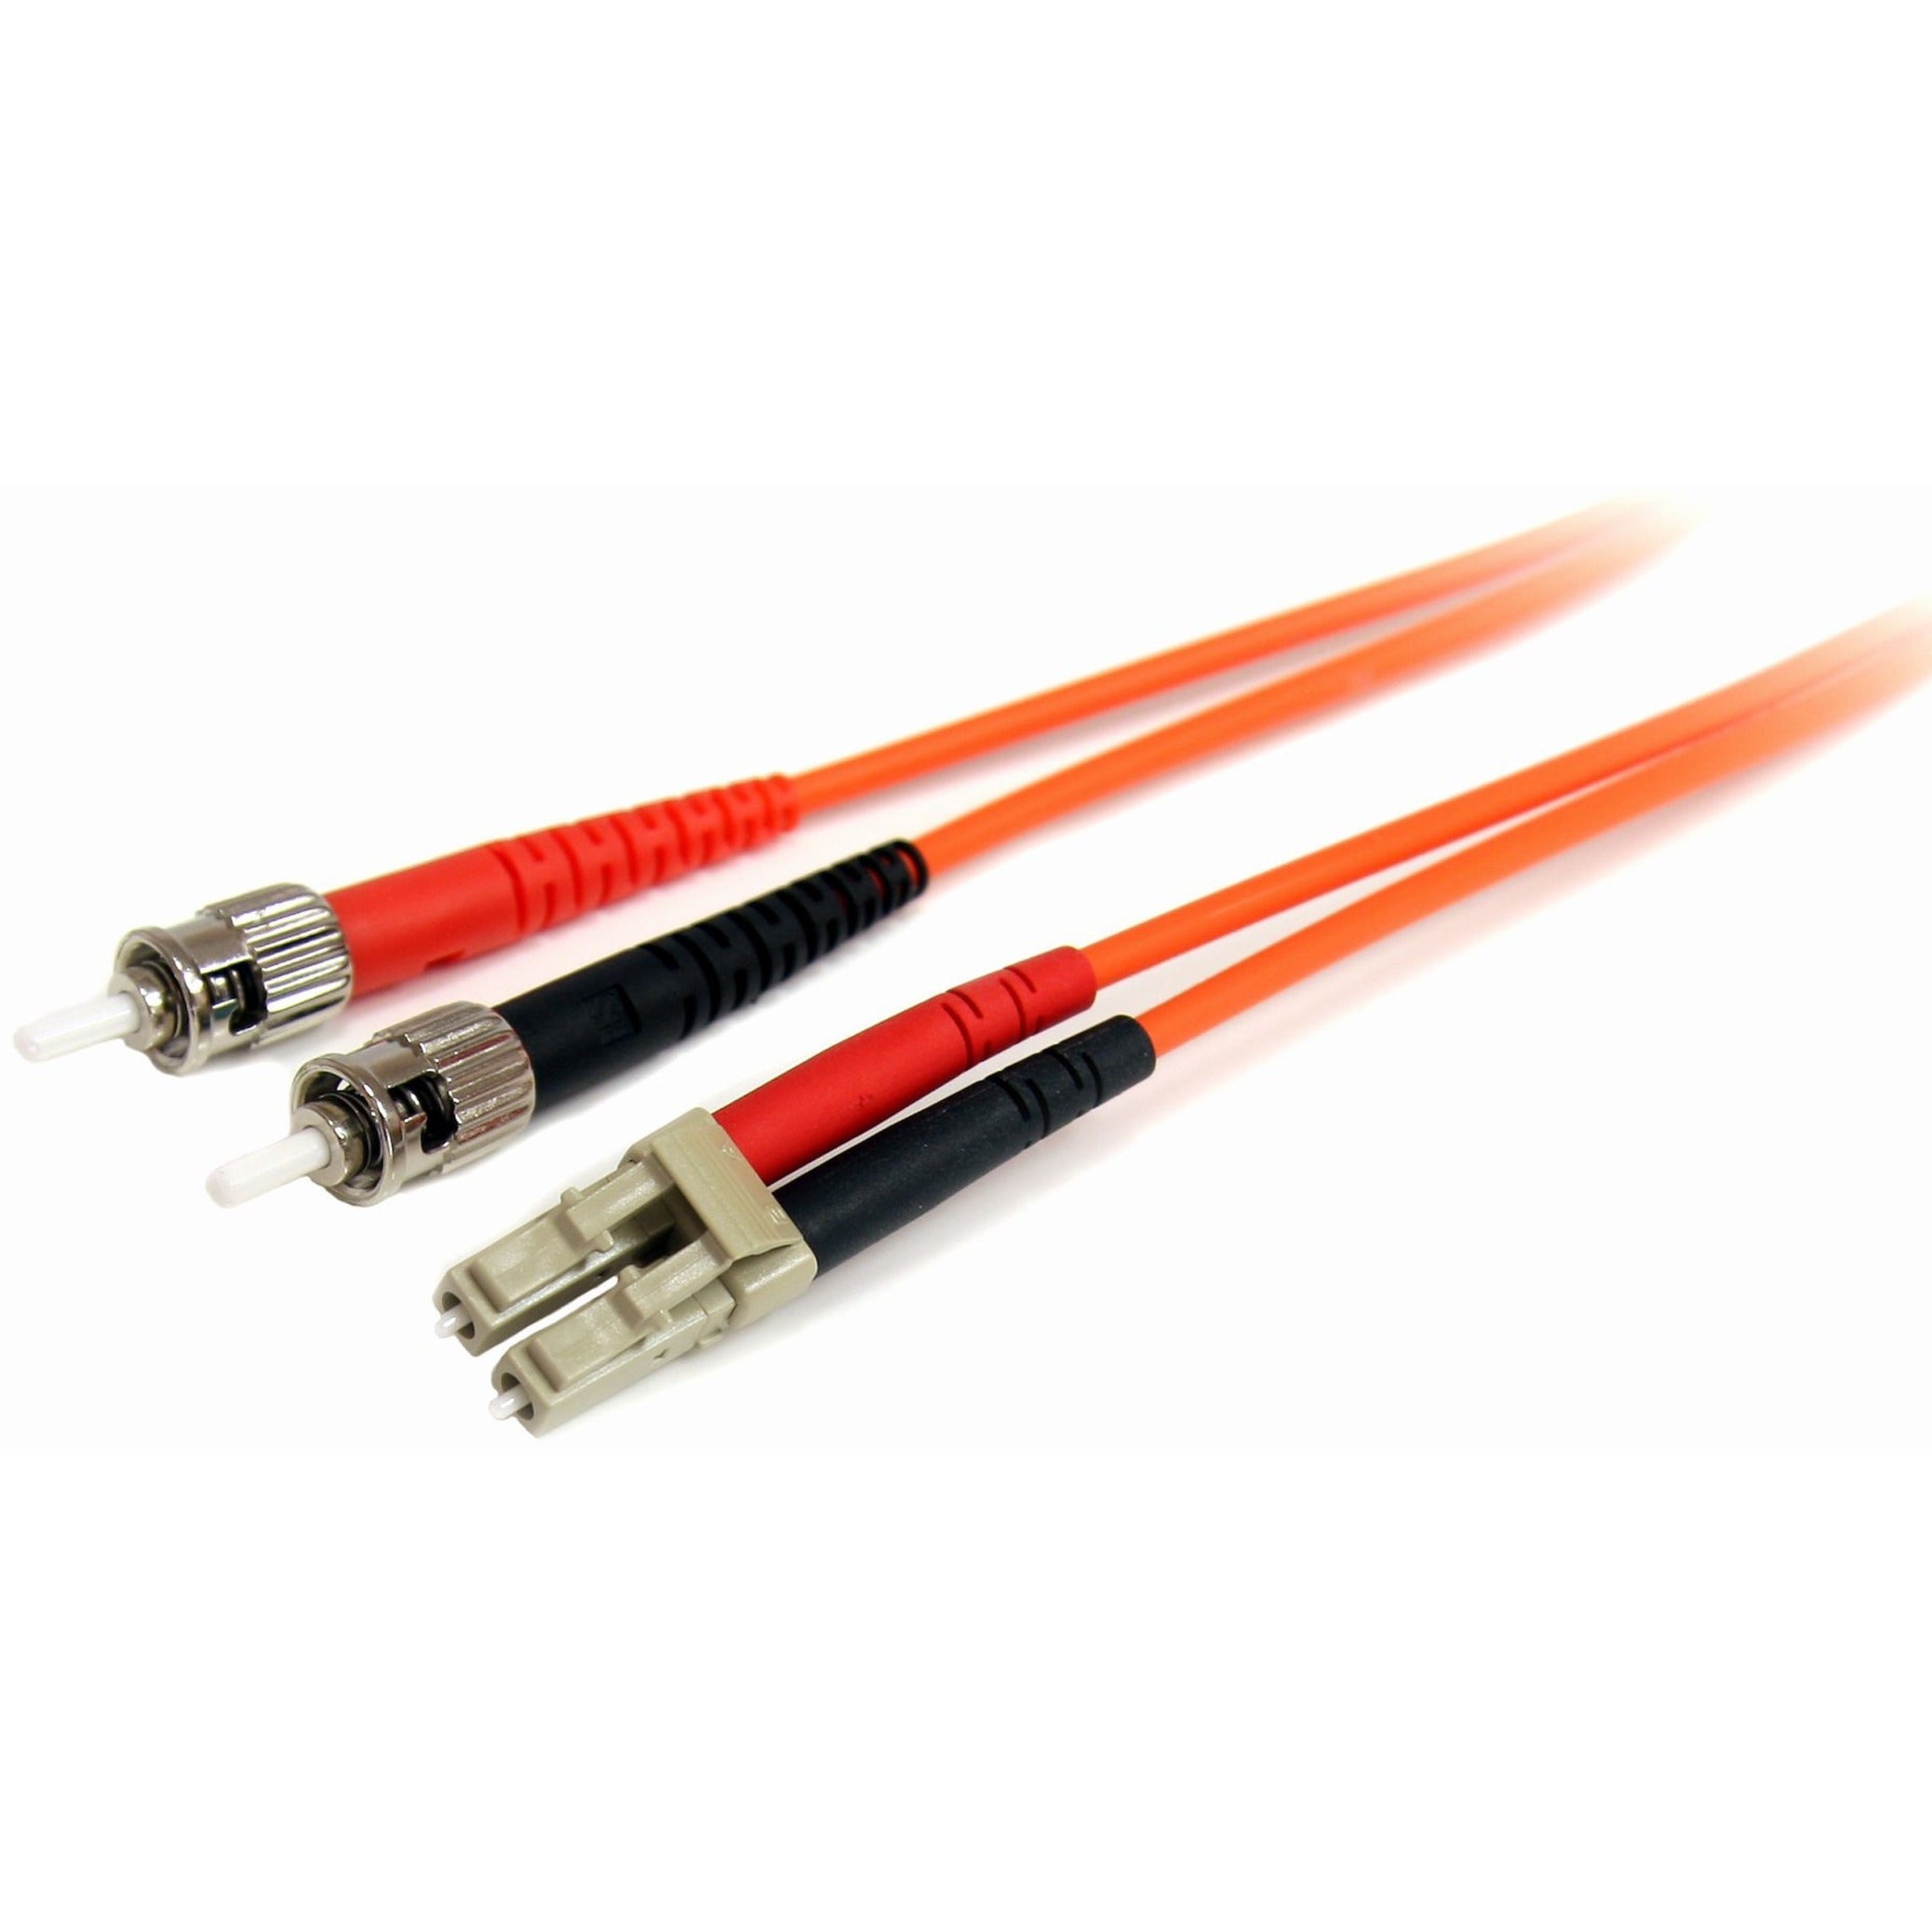 StarTech.com FIBLCST3 3m Multimode 62.5/125 Duplex Fiber Patch Cable LC-ST, 10 Gbit/s Data Transfer Rate, Orange